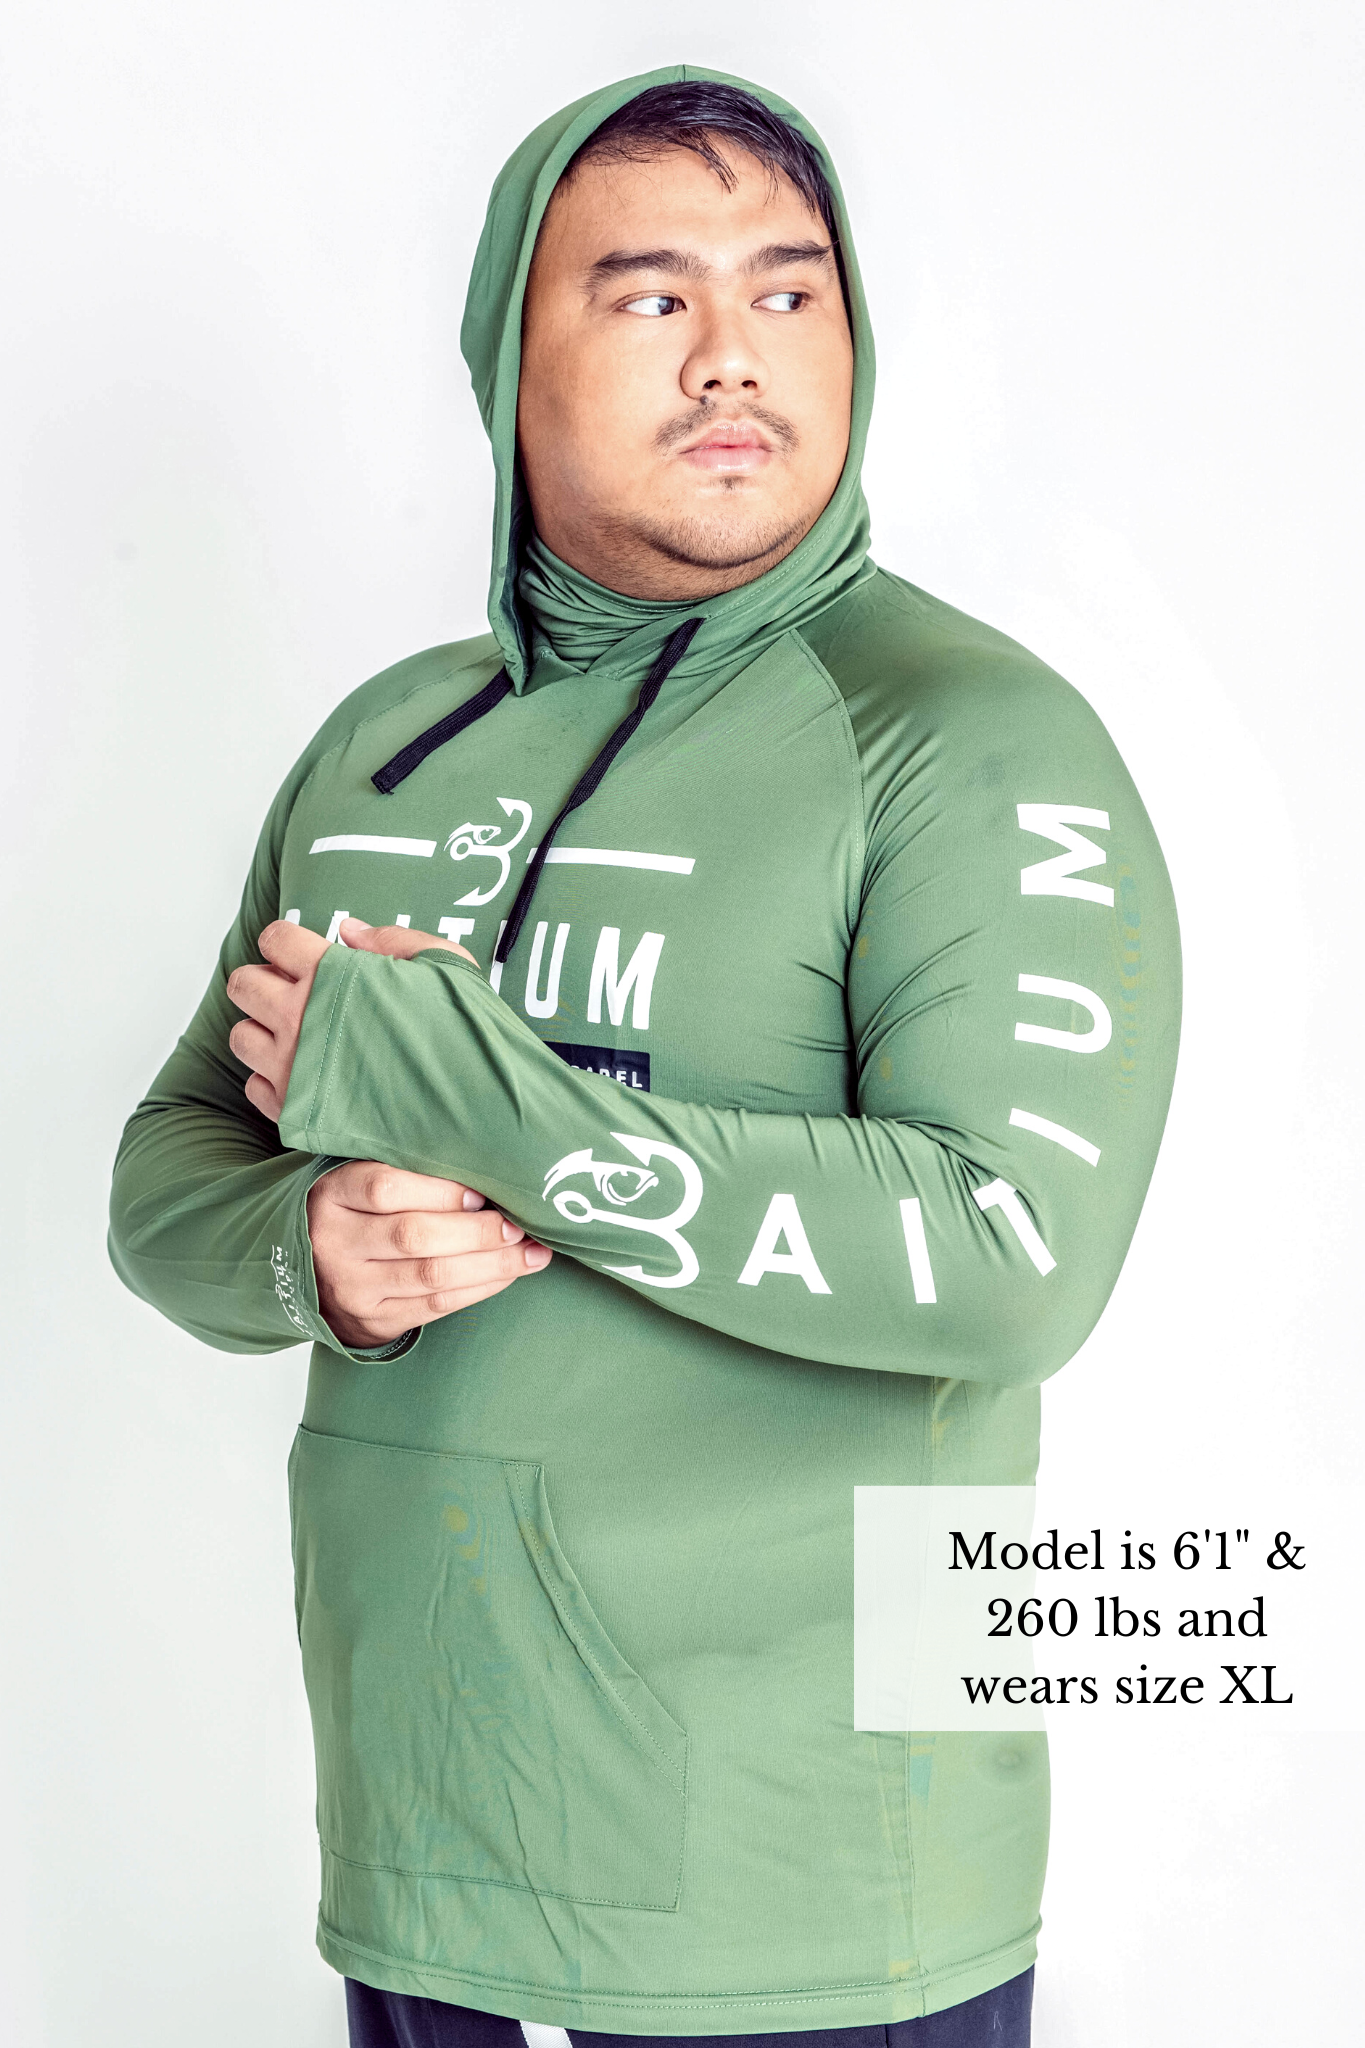 Baitium Original Hooded UPF 50+ PFG Long Sleeves Fishing Shirts